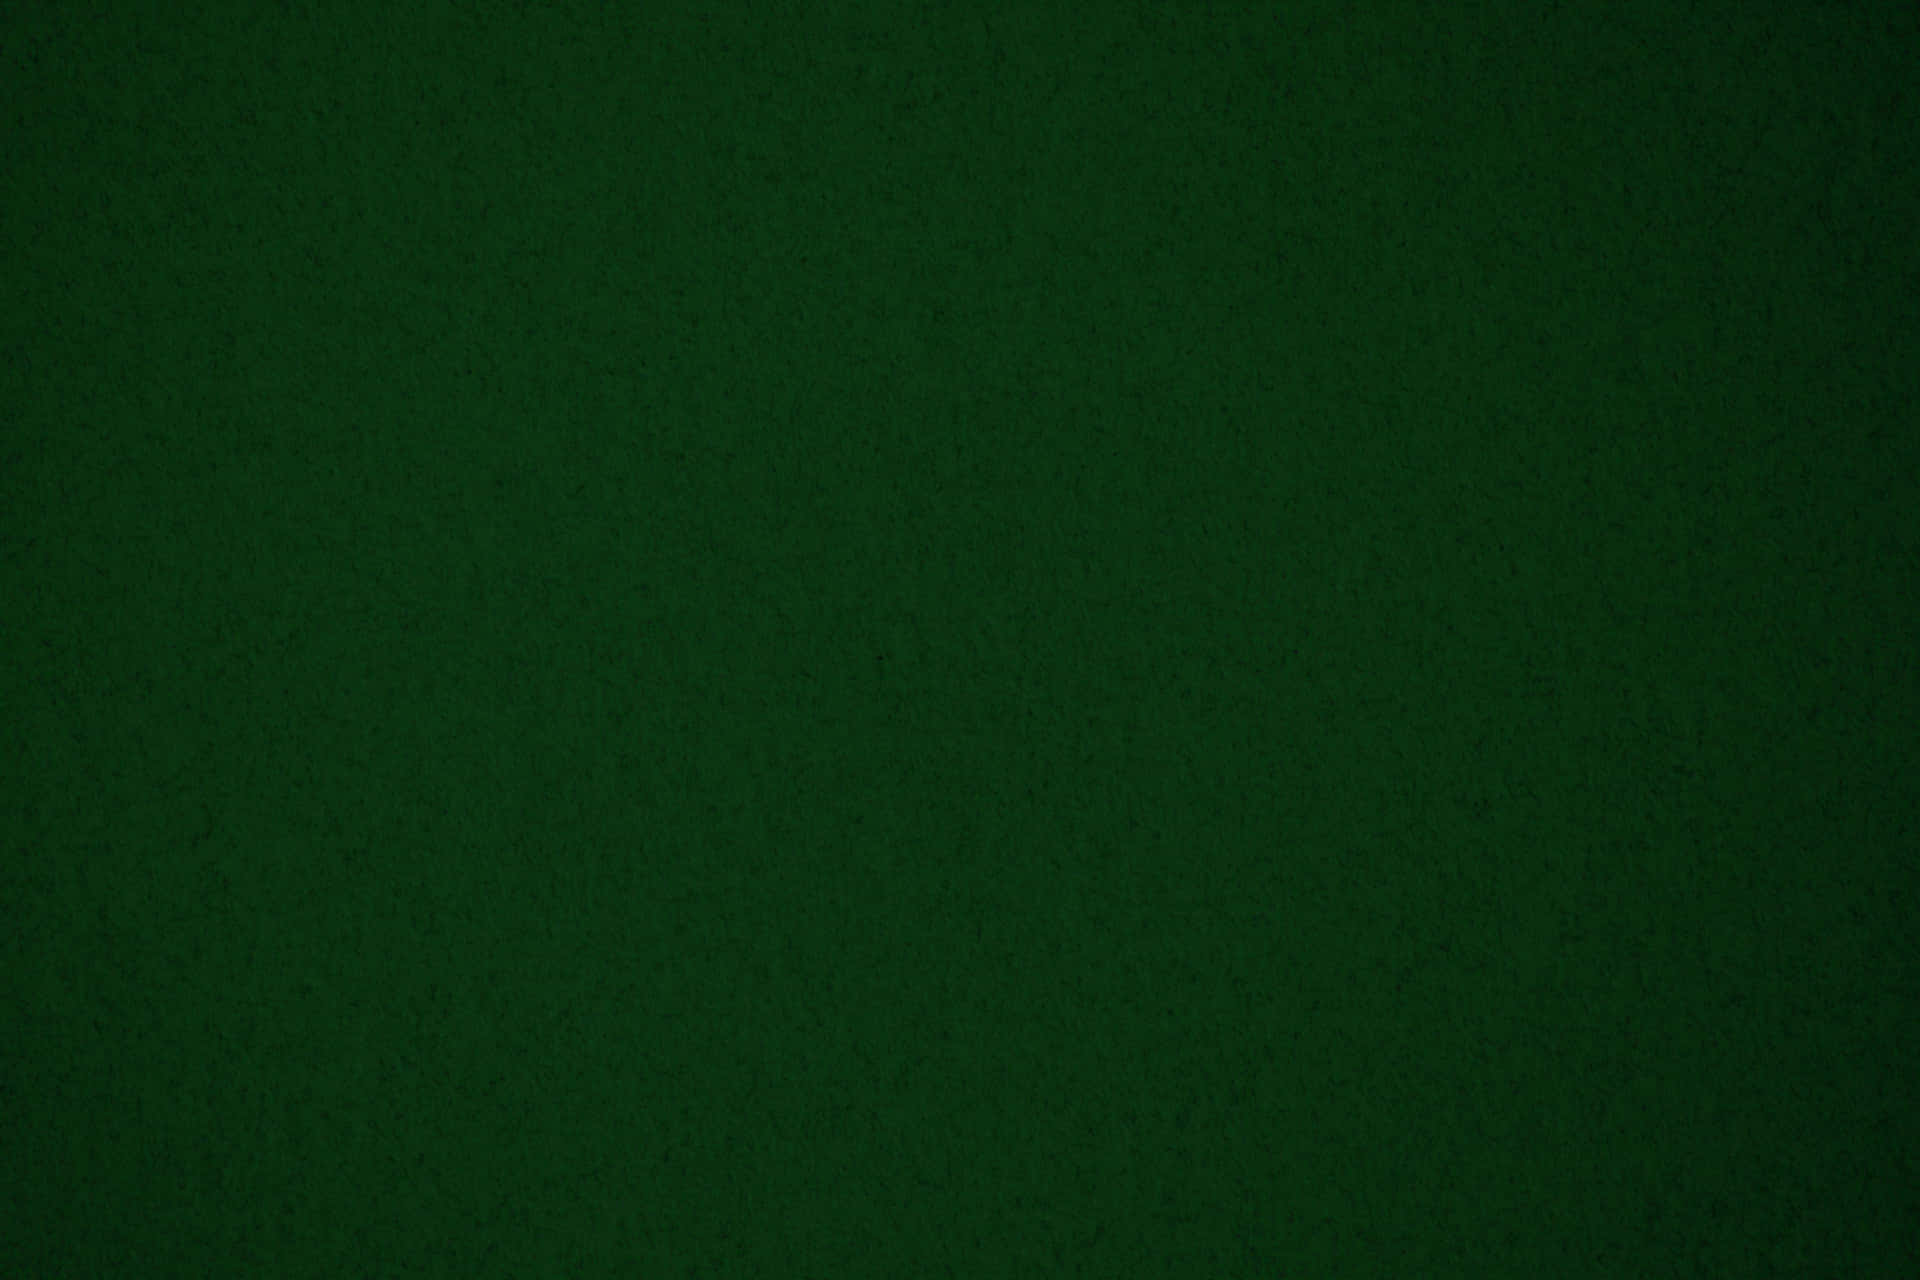 Unosfondo Bellissimo Di Colore Verde Scuro Con Sottili Accenni Di Effetto Marmo.